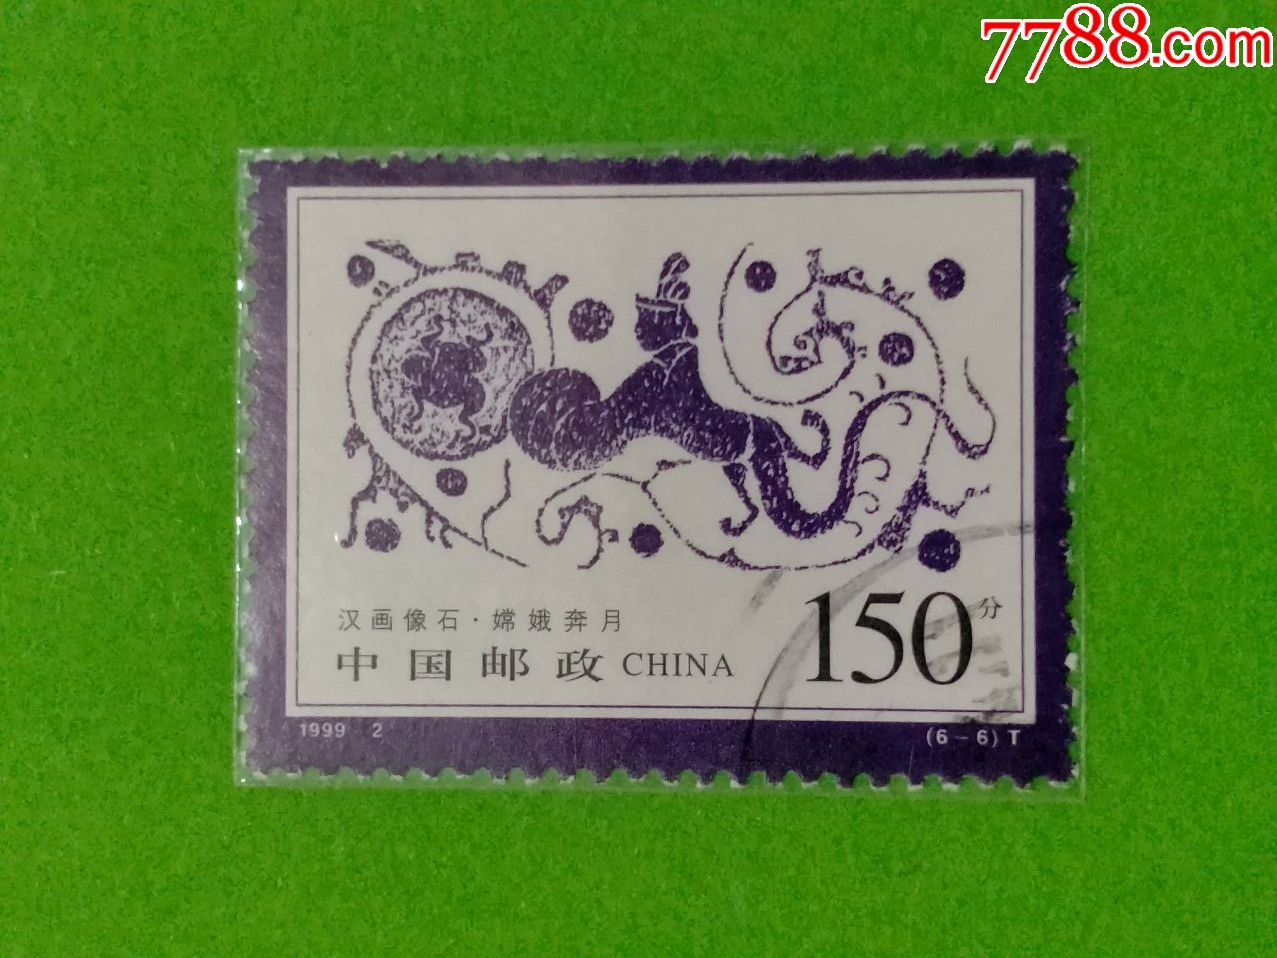 1999-2汉画像石-新中国邮票-7788商城